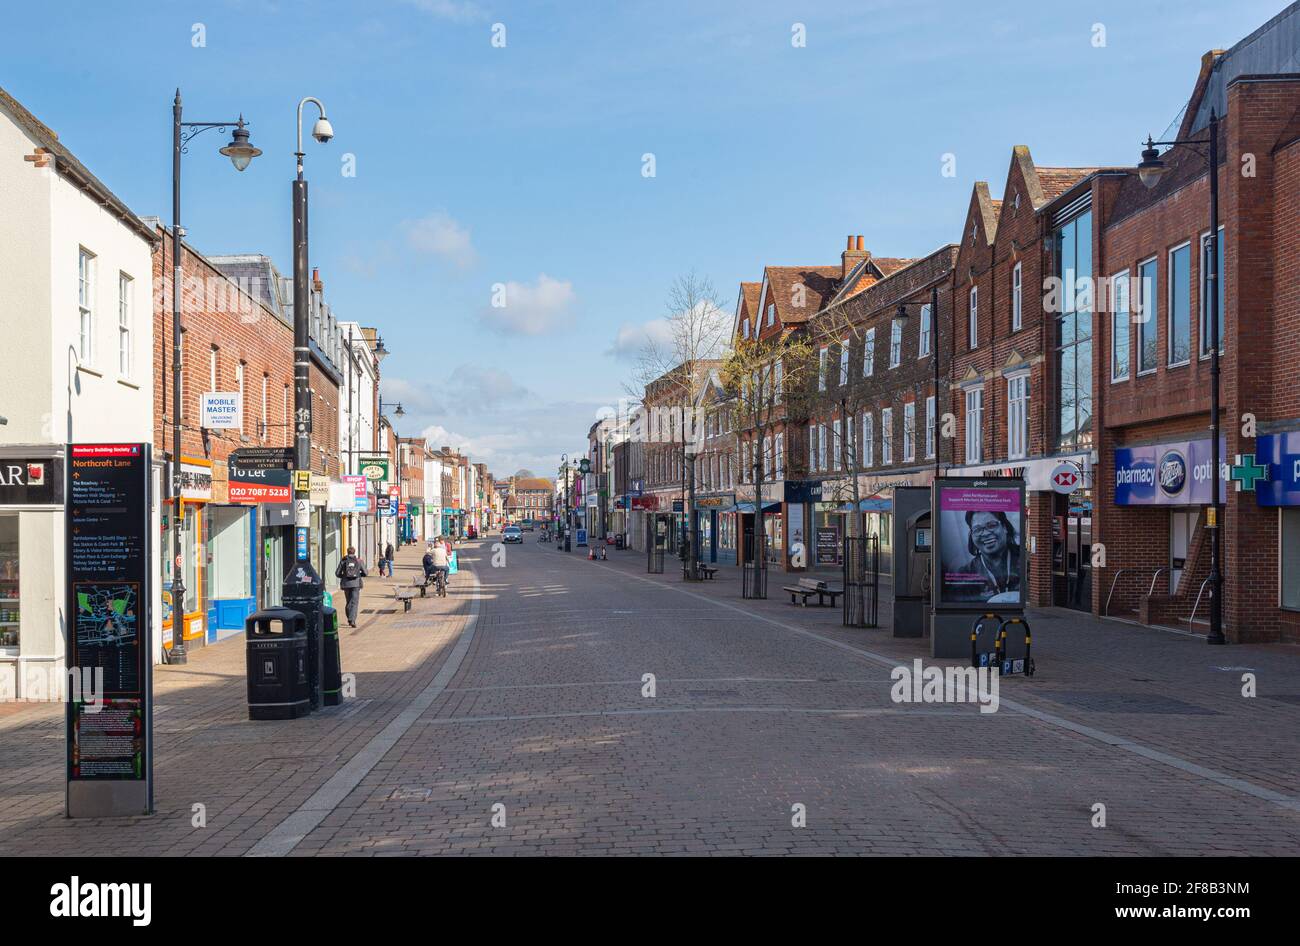 Newbury High Street avec magasins et pavé rouge lors d'une journée ensoleillée avec nuage clair. Newbury, Berkshire, Angleterre, Royaume-Uni. Prise le 11 avril 2021. Banque D'Images